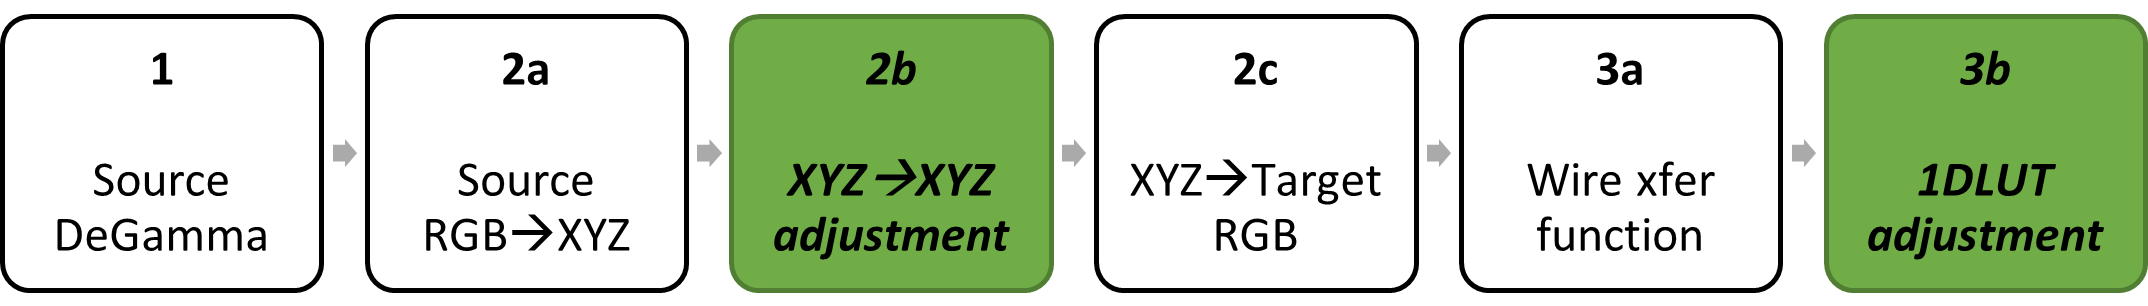 框图：源 degamma;颜色矩阵分解为源 RGB 到 XYZ，XYZ 到 XYZ，XYZ 分解为目标 RGB;目标 regamma 分解为电汇函数，1DLUT 调整